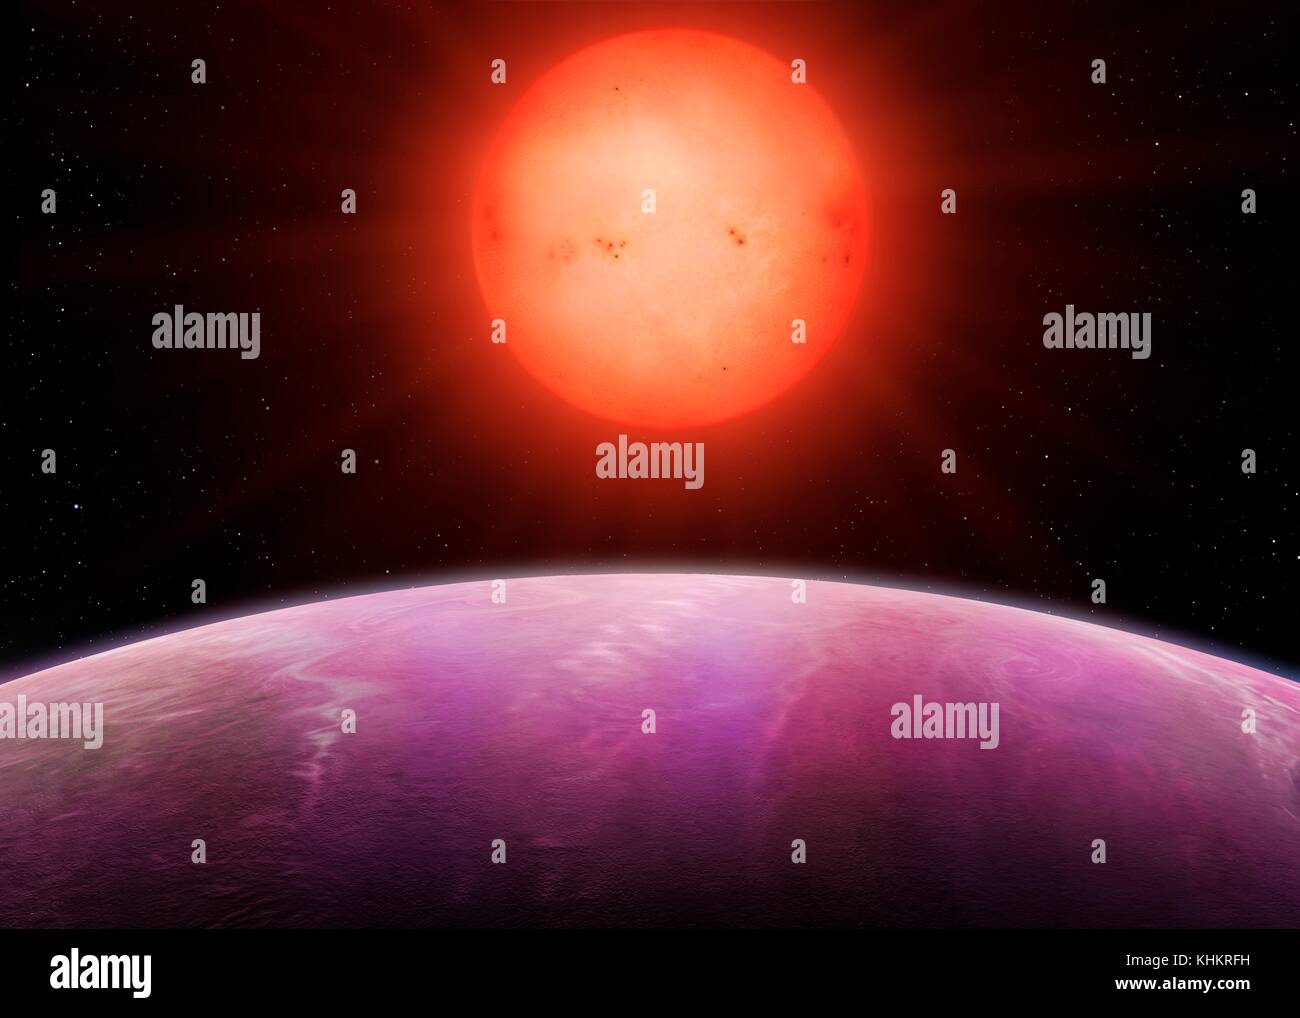 Red dwarf NGTS-1 und sein Gas Giant Planet, Illustration. NGTS (Next-Generation Transit Umfrage) in der Atacama-Wüste in Chile gelegen, mit einem primären Ziel extrasolare Planeten mit Massen und Größen zwischen denen von Erde und Neptun zu lokalisieren. Eine der Entdeckungen ist NGTS-1, einem Roten Zwerg etwa die Hälfte der Durchmesser der Sonne. Es gefunden wurde, um einen Planeten zu Host fast ein Viertel seiner Größe und ist damit der größte bekannte Planeten in Bezug auf die Sterne. Stockfoto